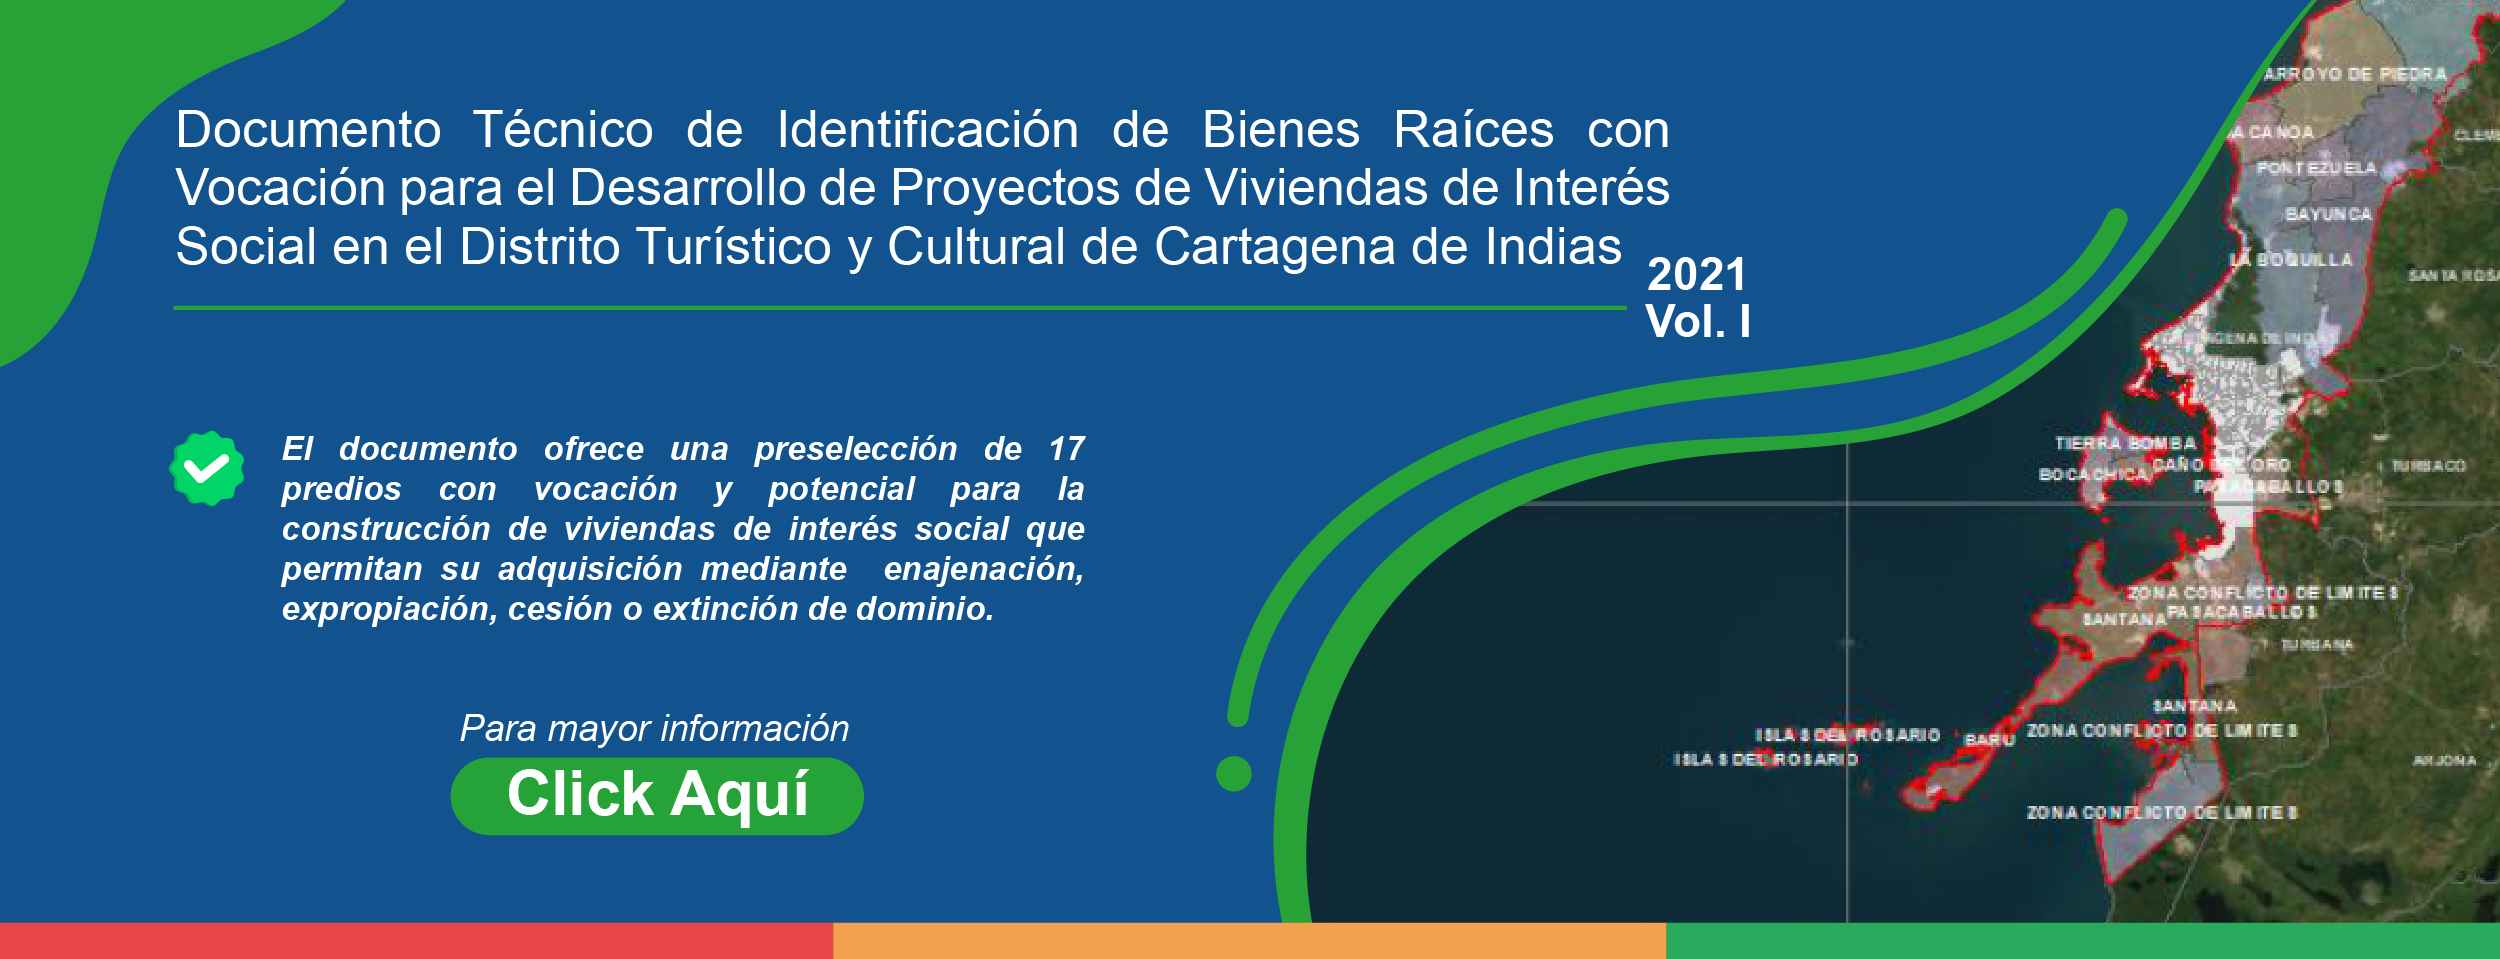 Documento Técnico de Identificación de Bienes Raices con Vocación para el Desarrollo de Proyectos de Viviendas de Interés Social en el Distrito Turístico y Cultural de Cartagena de Indias 2021